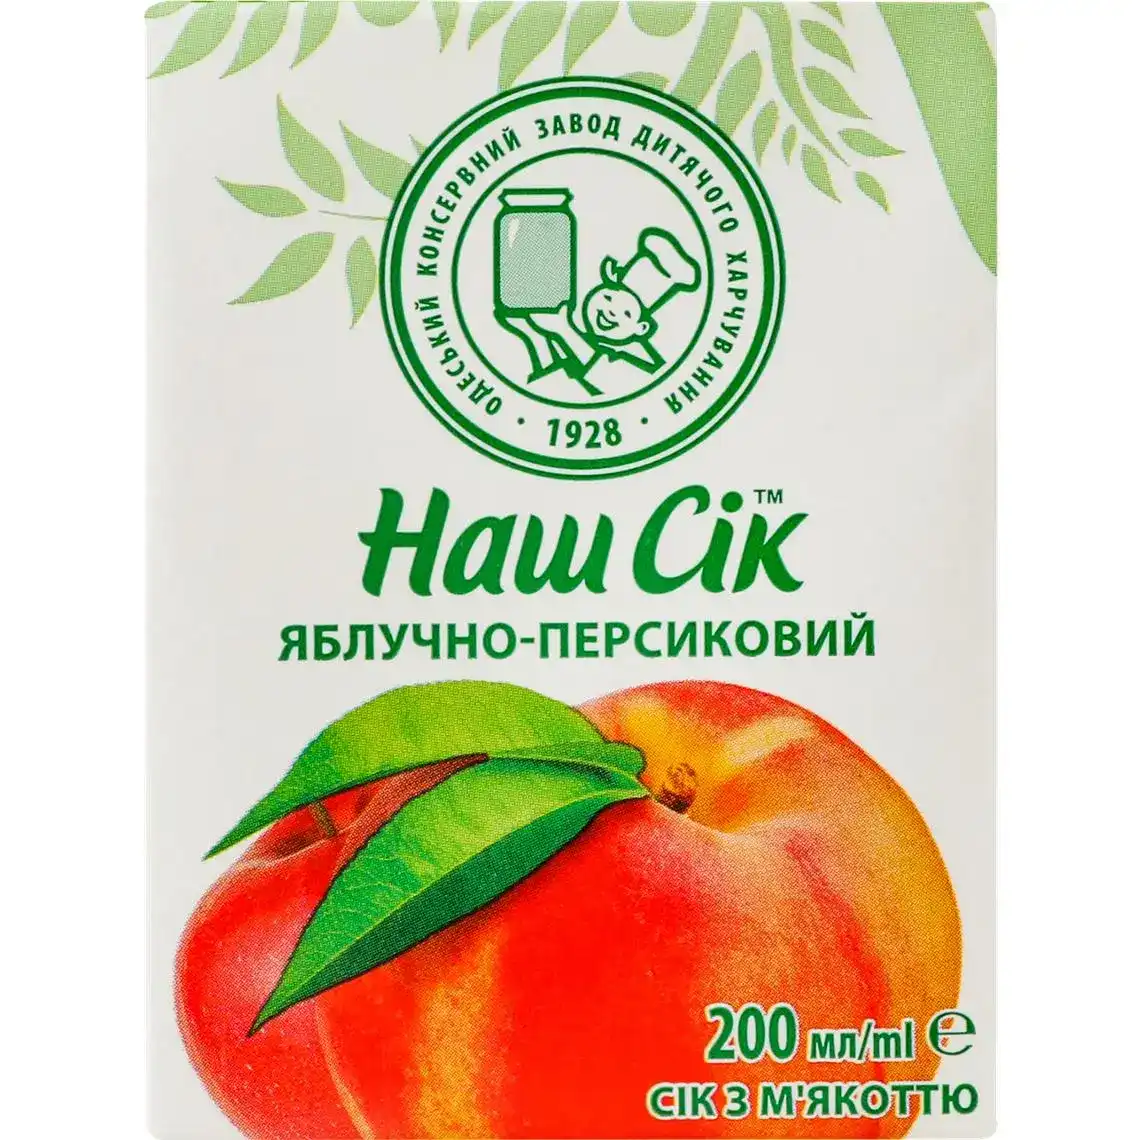 Сік Наш сік яблучно-персиковий з м'якоттю 200 мл